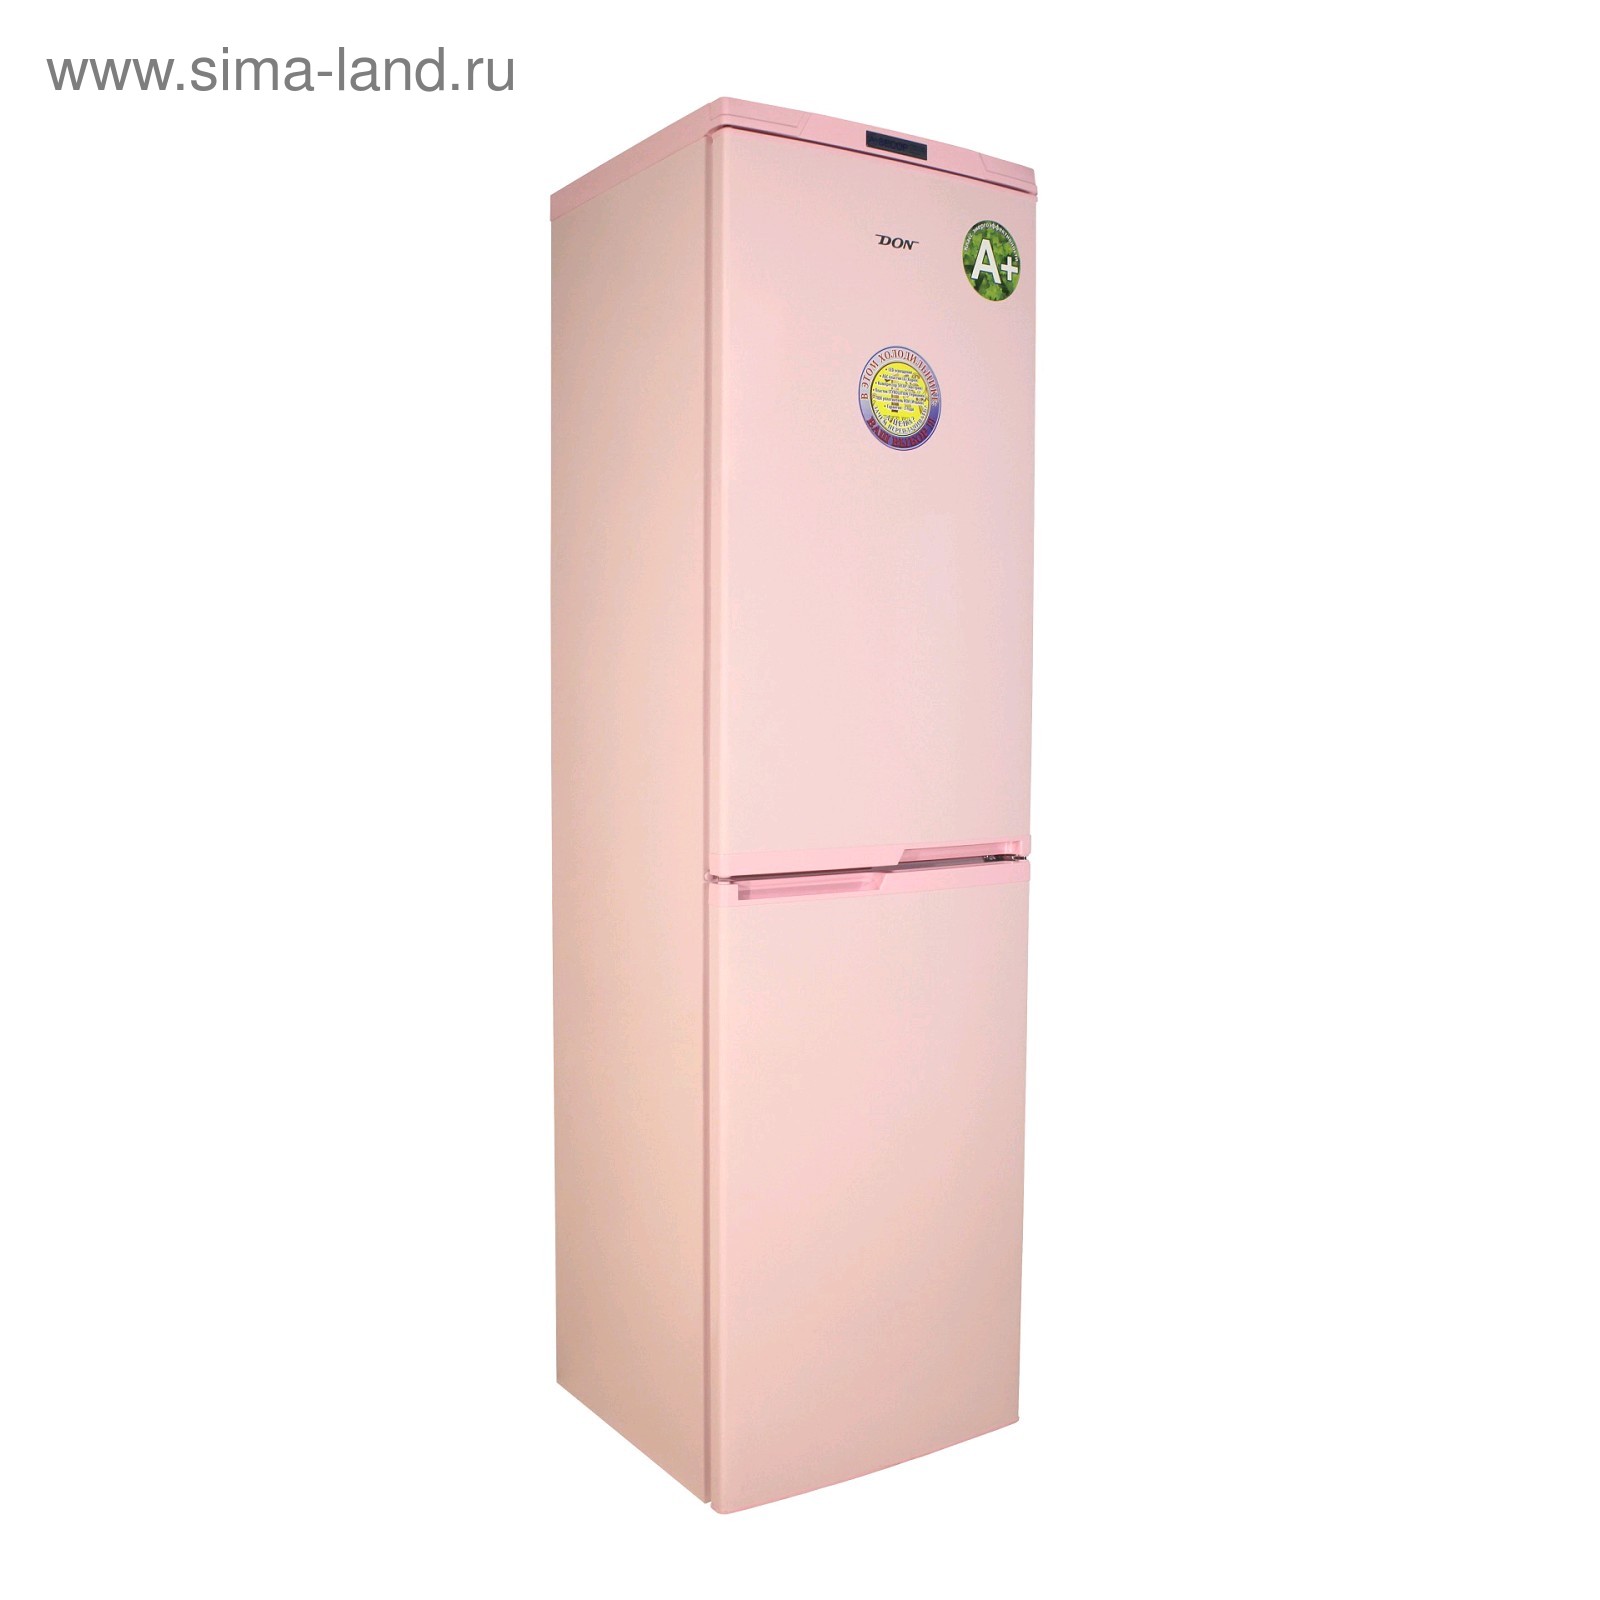 Холодильник don r 291 розовый